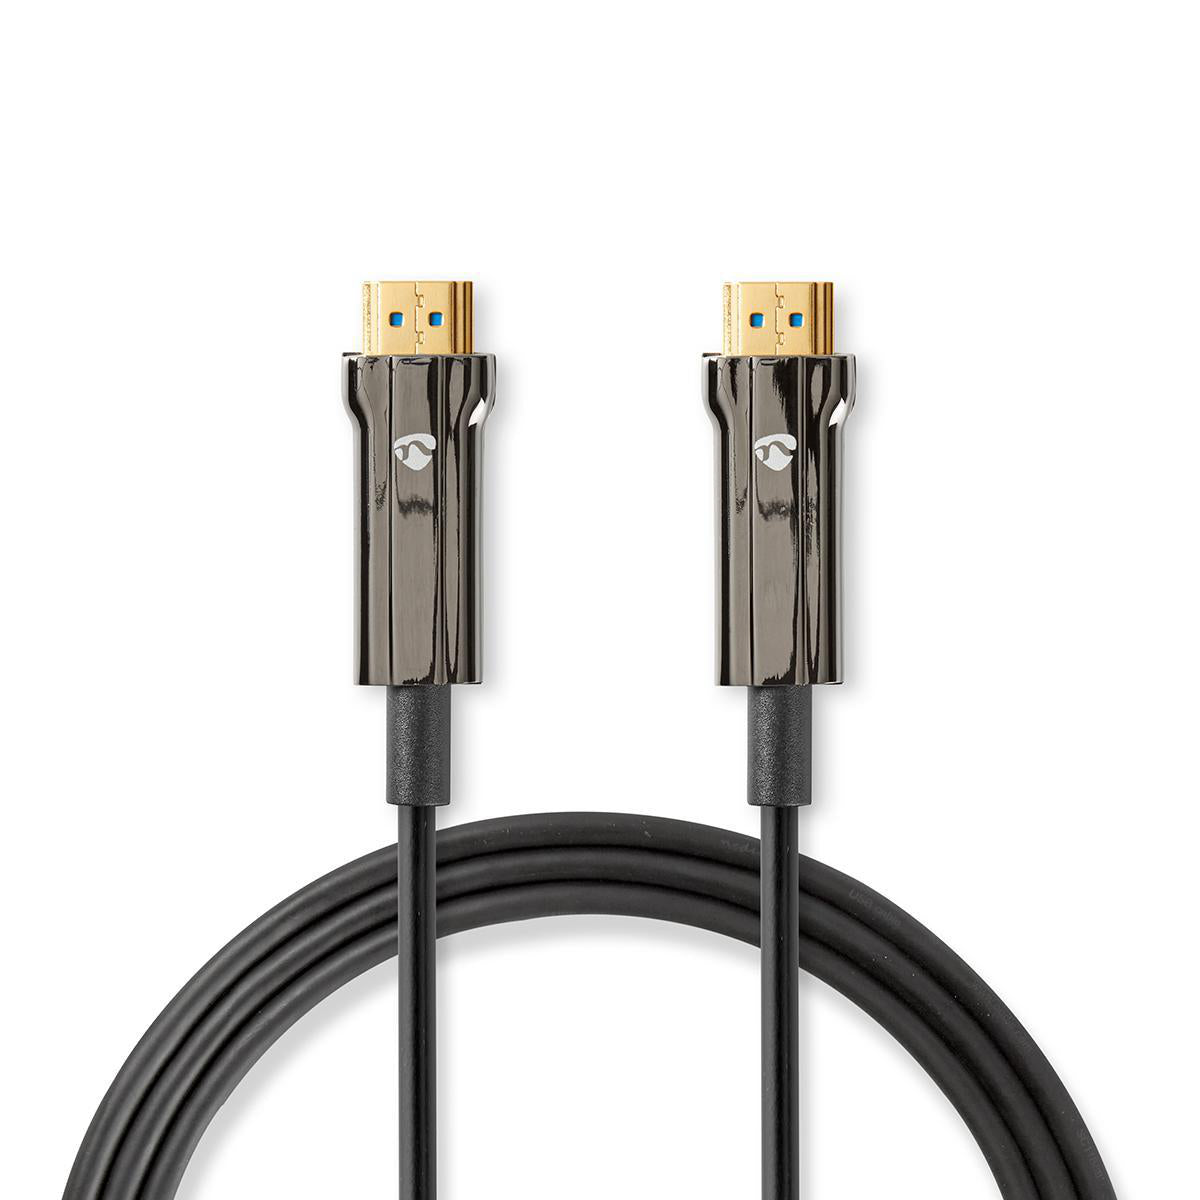 Aktive Optische Ultra High Speed HDMI-Kabel mit Ethernet | HDMI™ Stecker | HDMI™ Stecker | 8K@60Hz | 48 Gbps | 75.0 m | Rund | PVC | Schwarz | Kartonverpackung